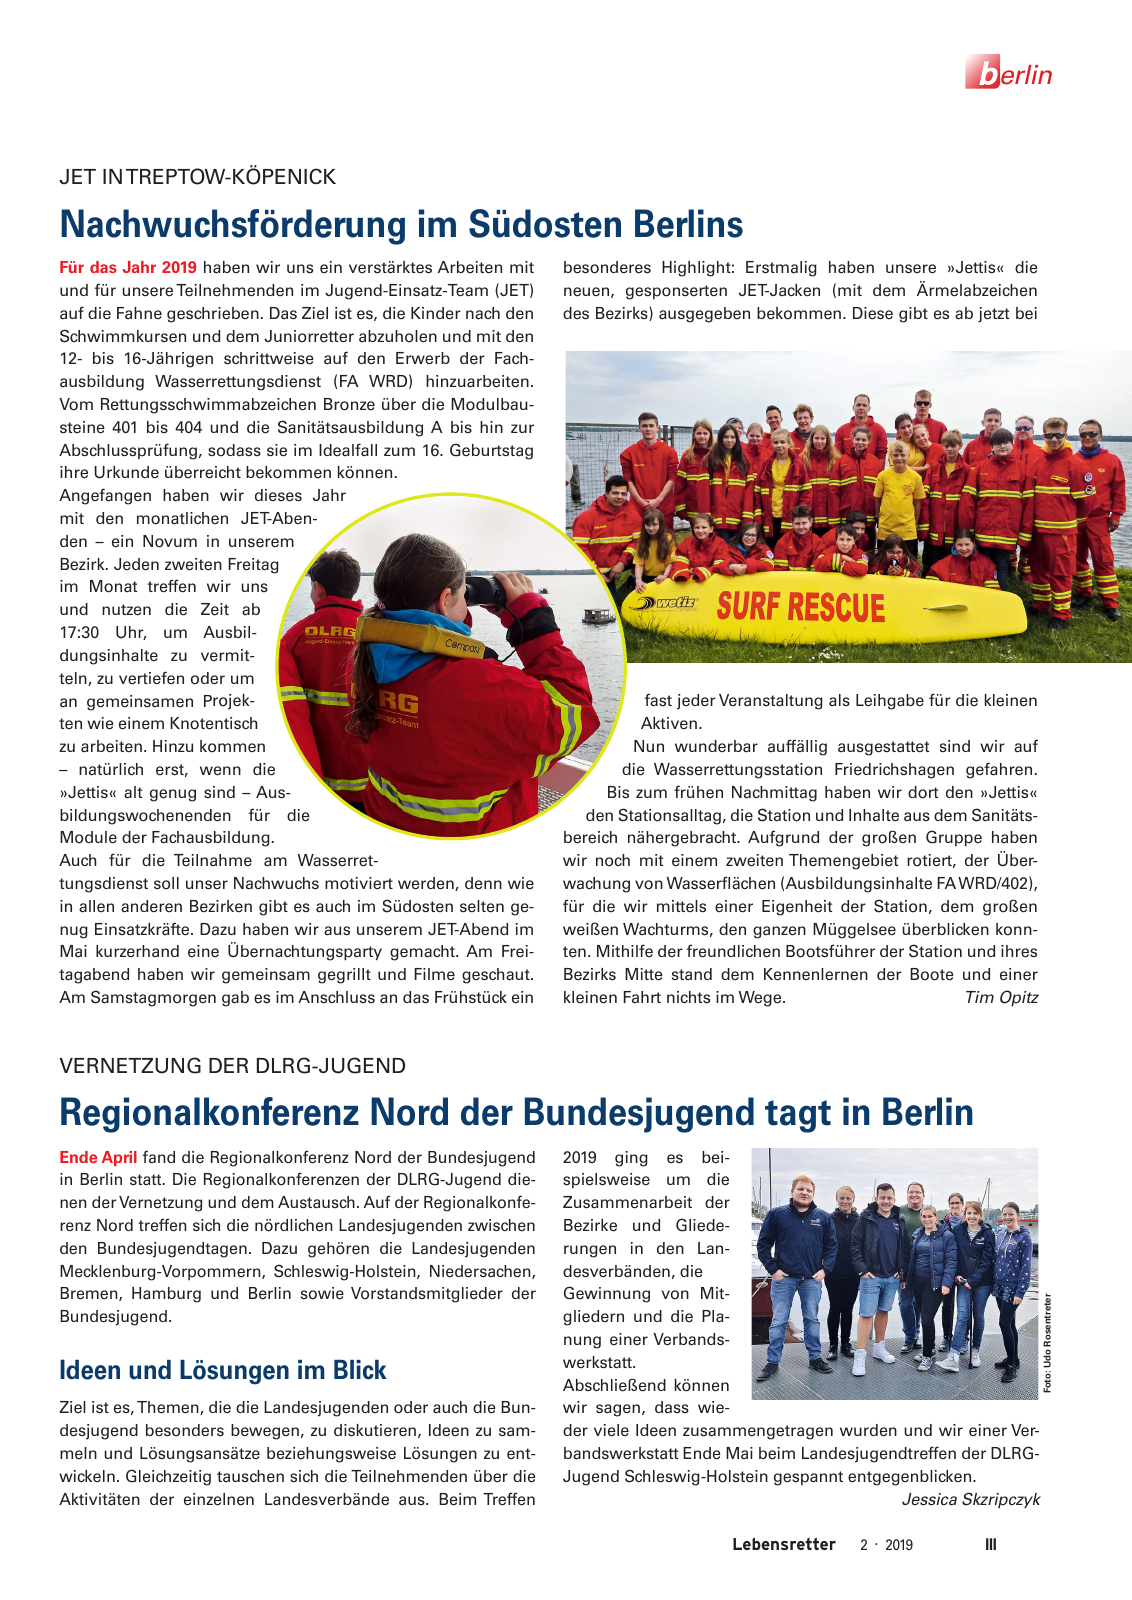 Vorschau Lebensretter 2/2019 - Berlin Regionalausgabe Seite 5